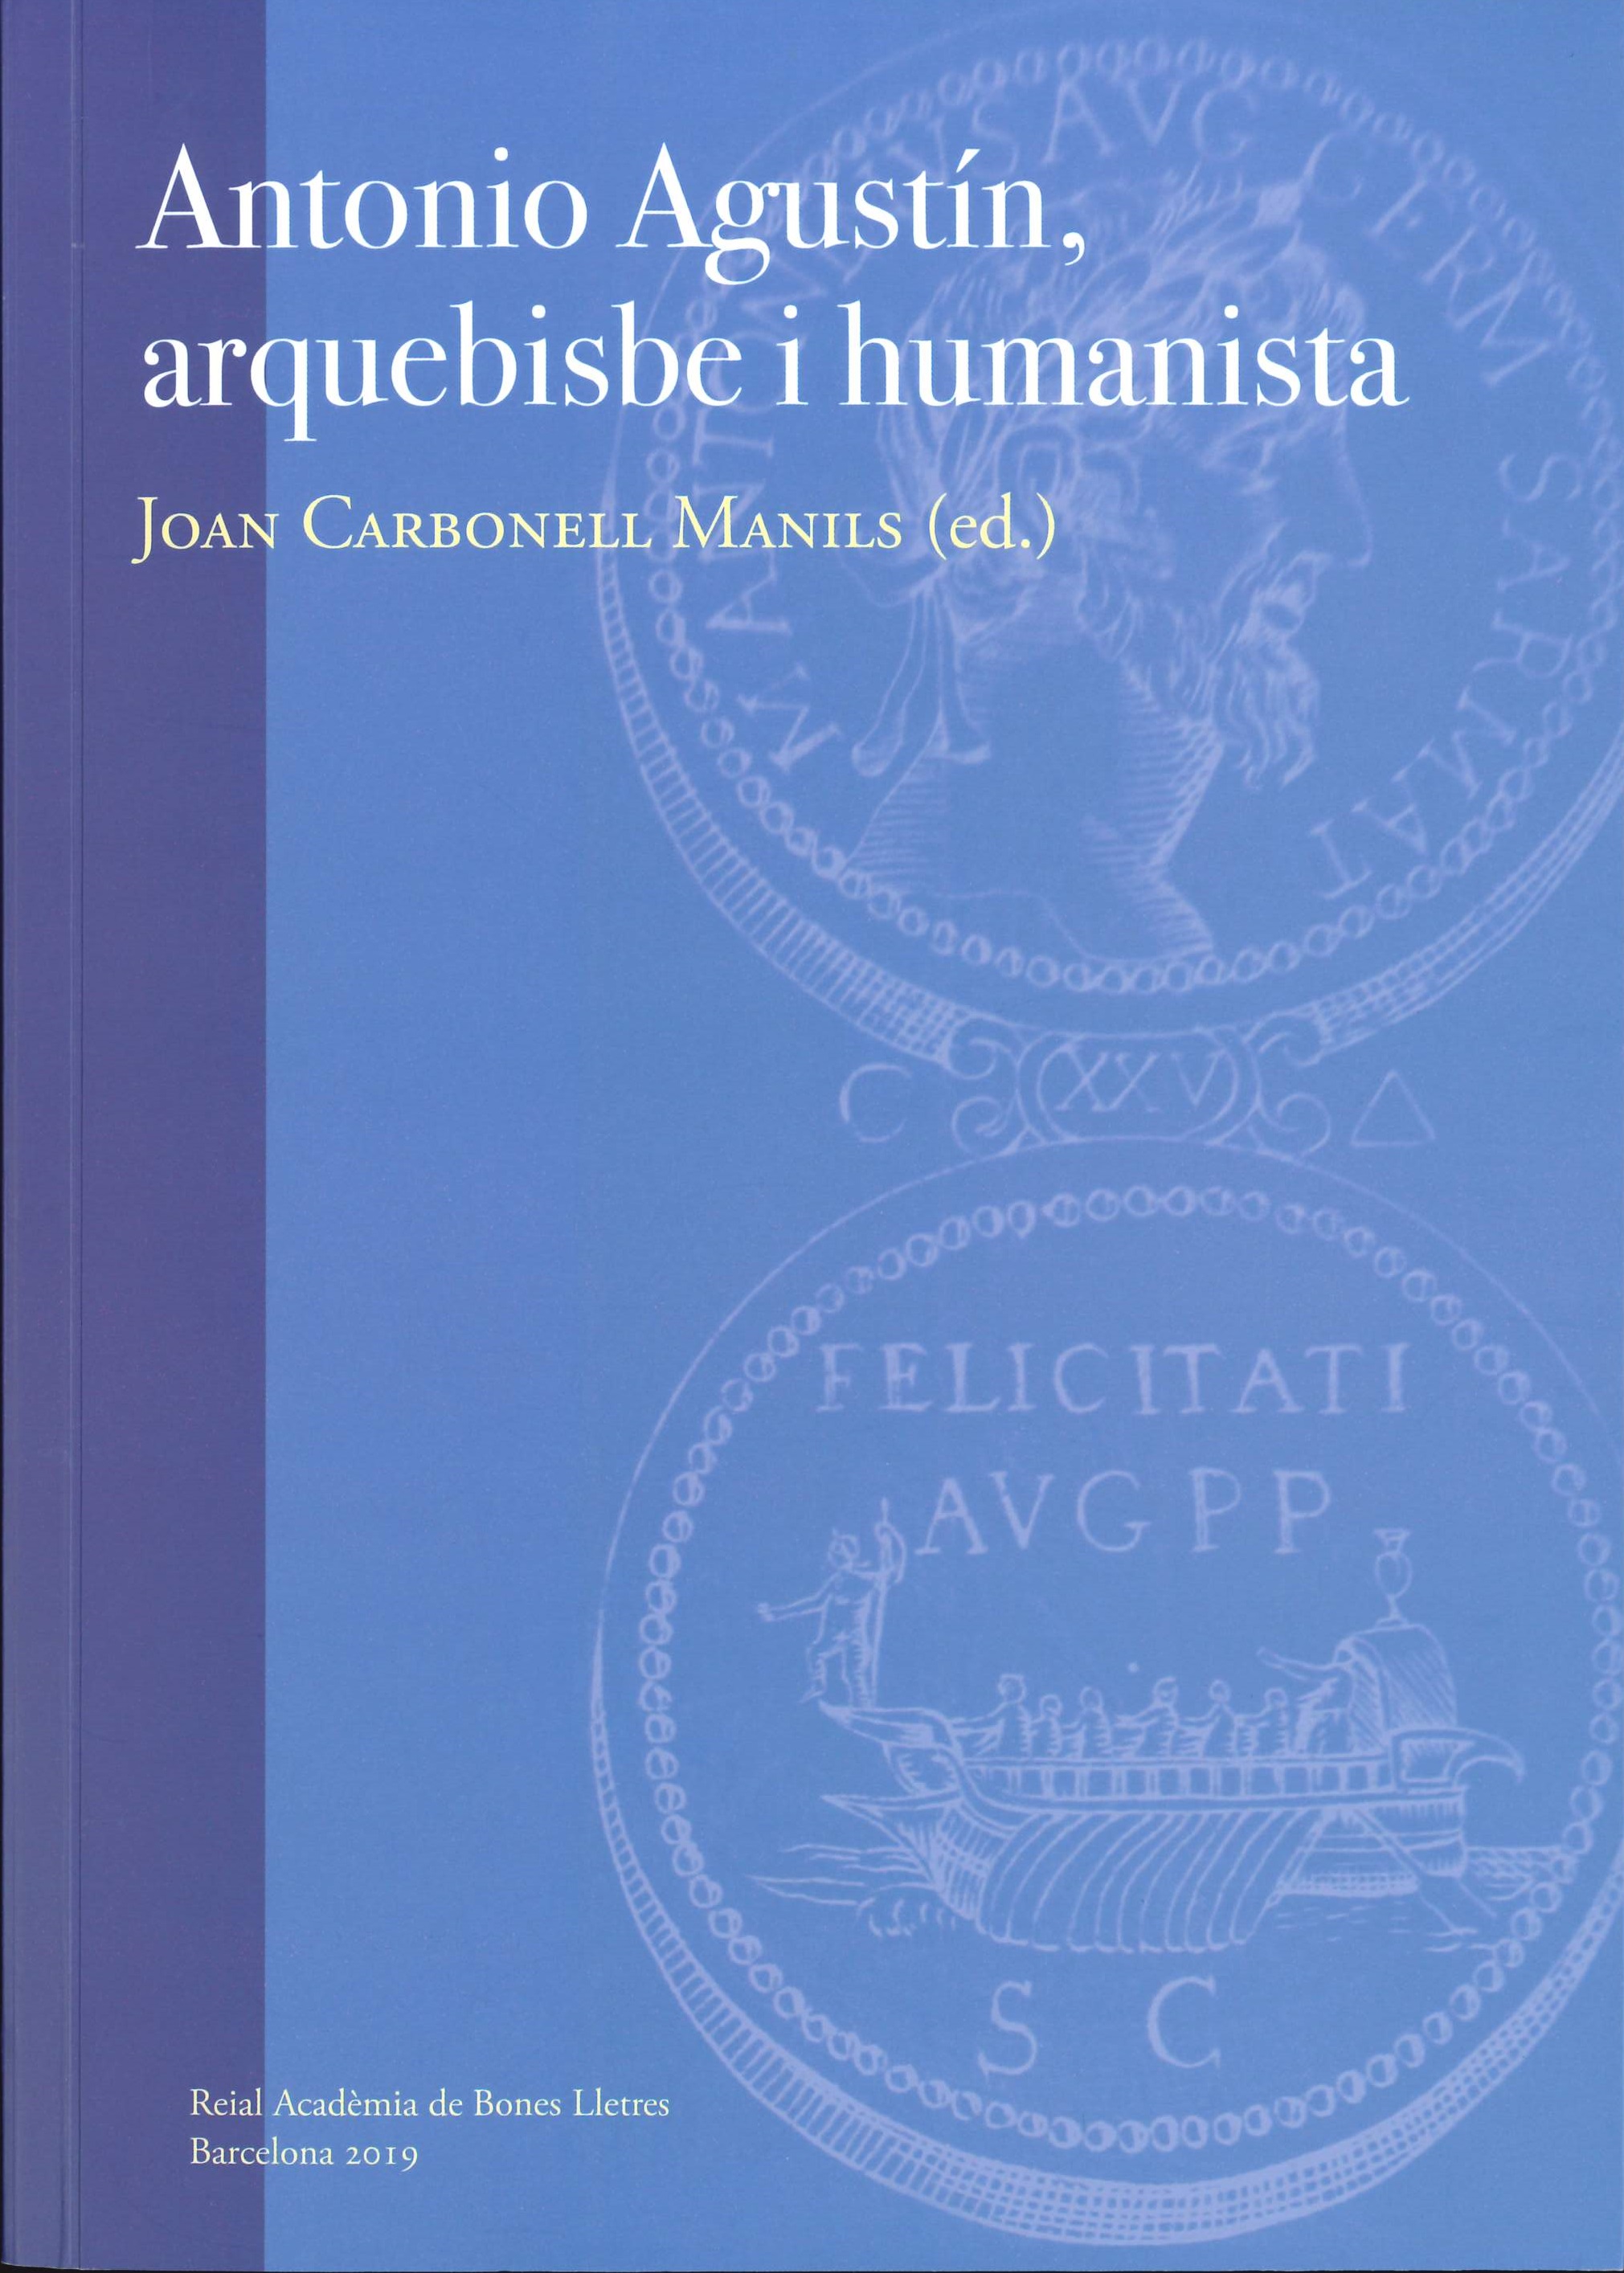 Imagen de portada del libro Antonio Agustín, arquebisbe i humanista